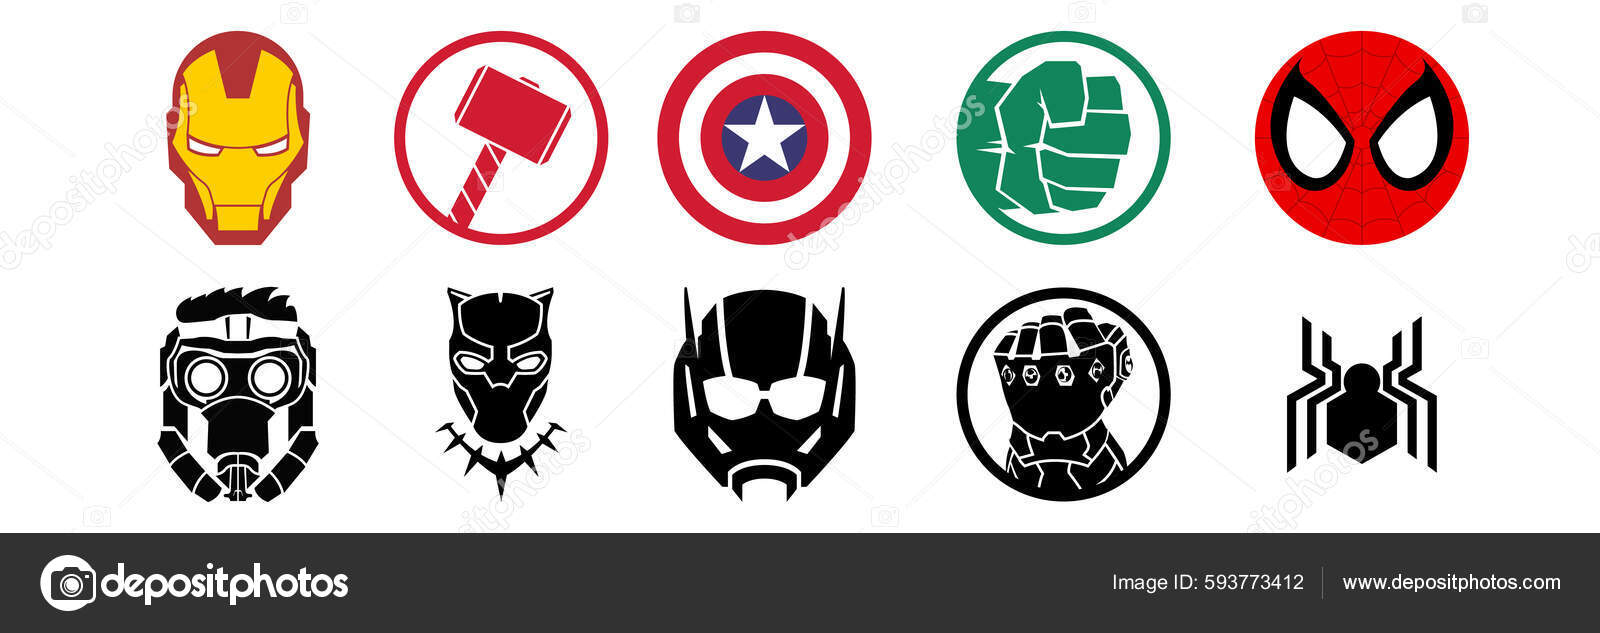 Son Cruel Humorístico Avengers logo imágenes de stock de arte vectorial | Depositphotos